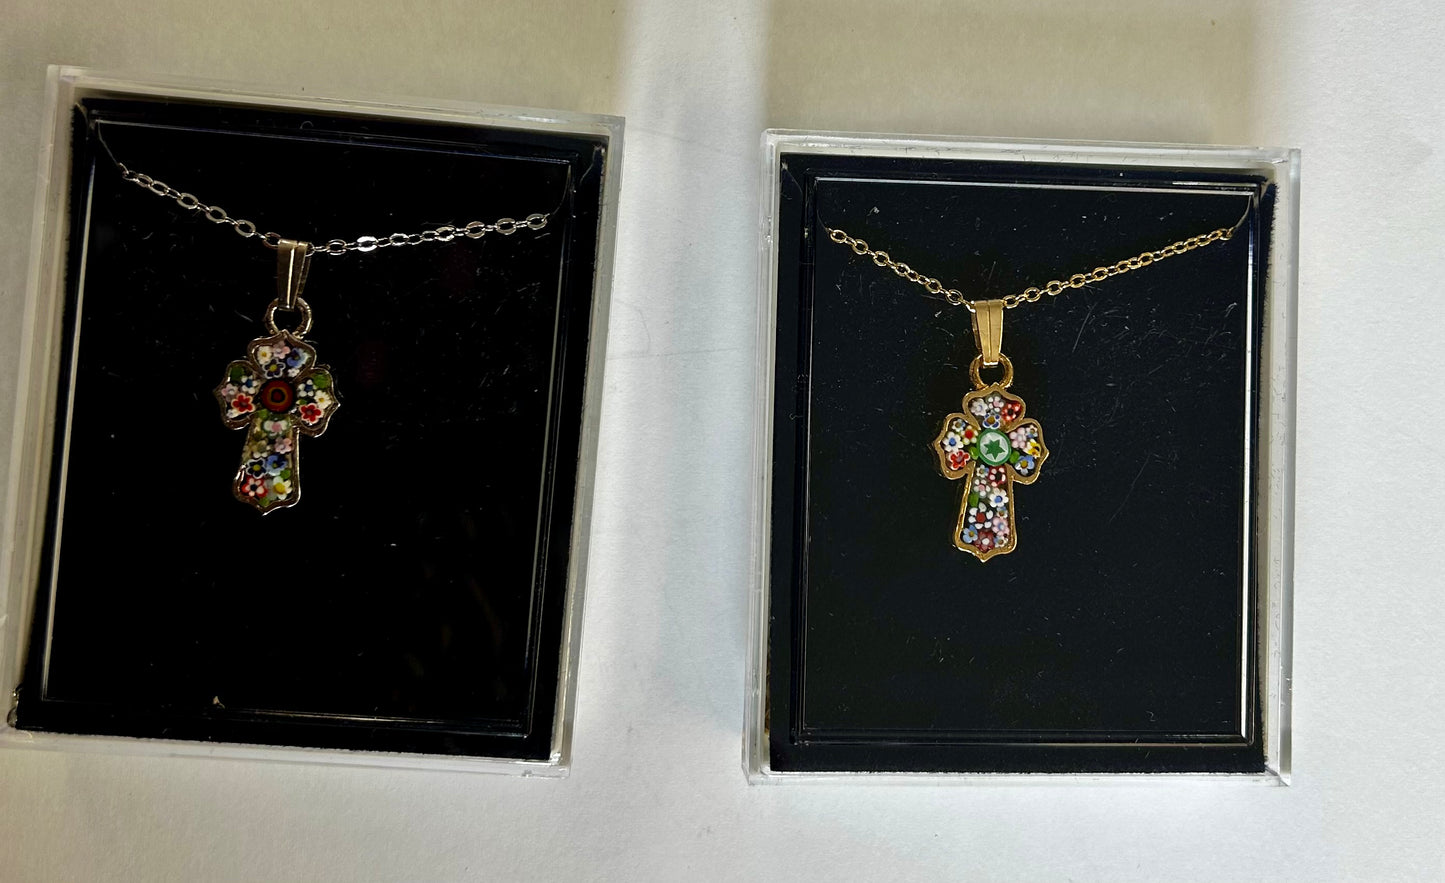 Necklace: Murano Glass Cross decorative edge